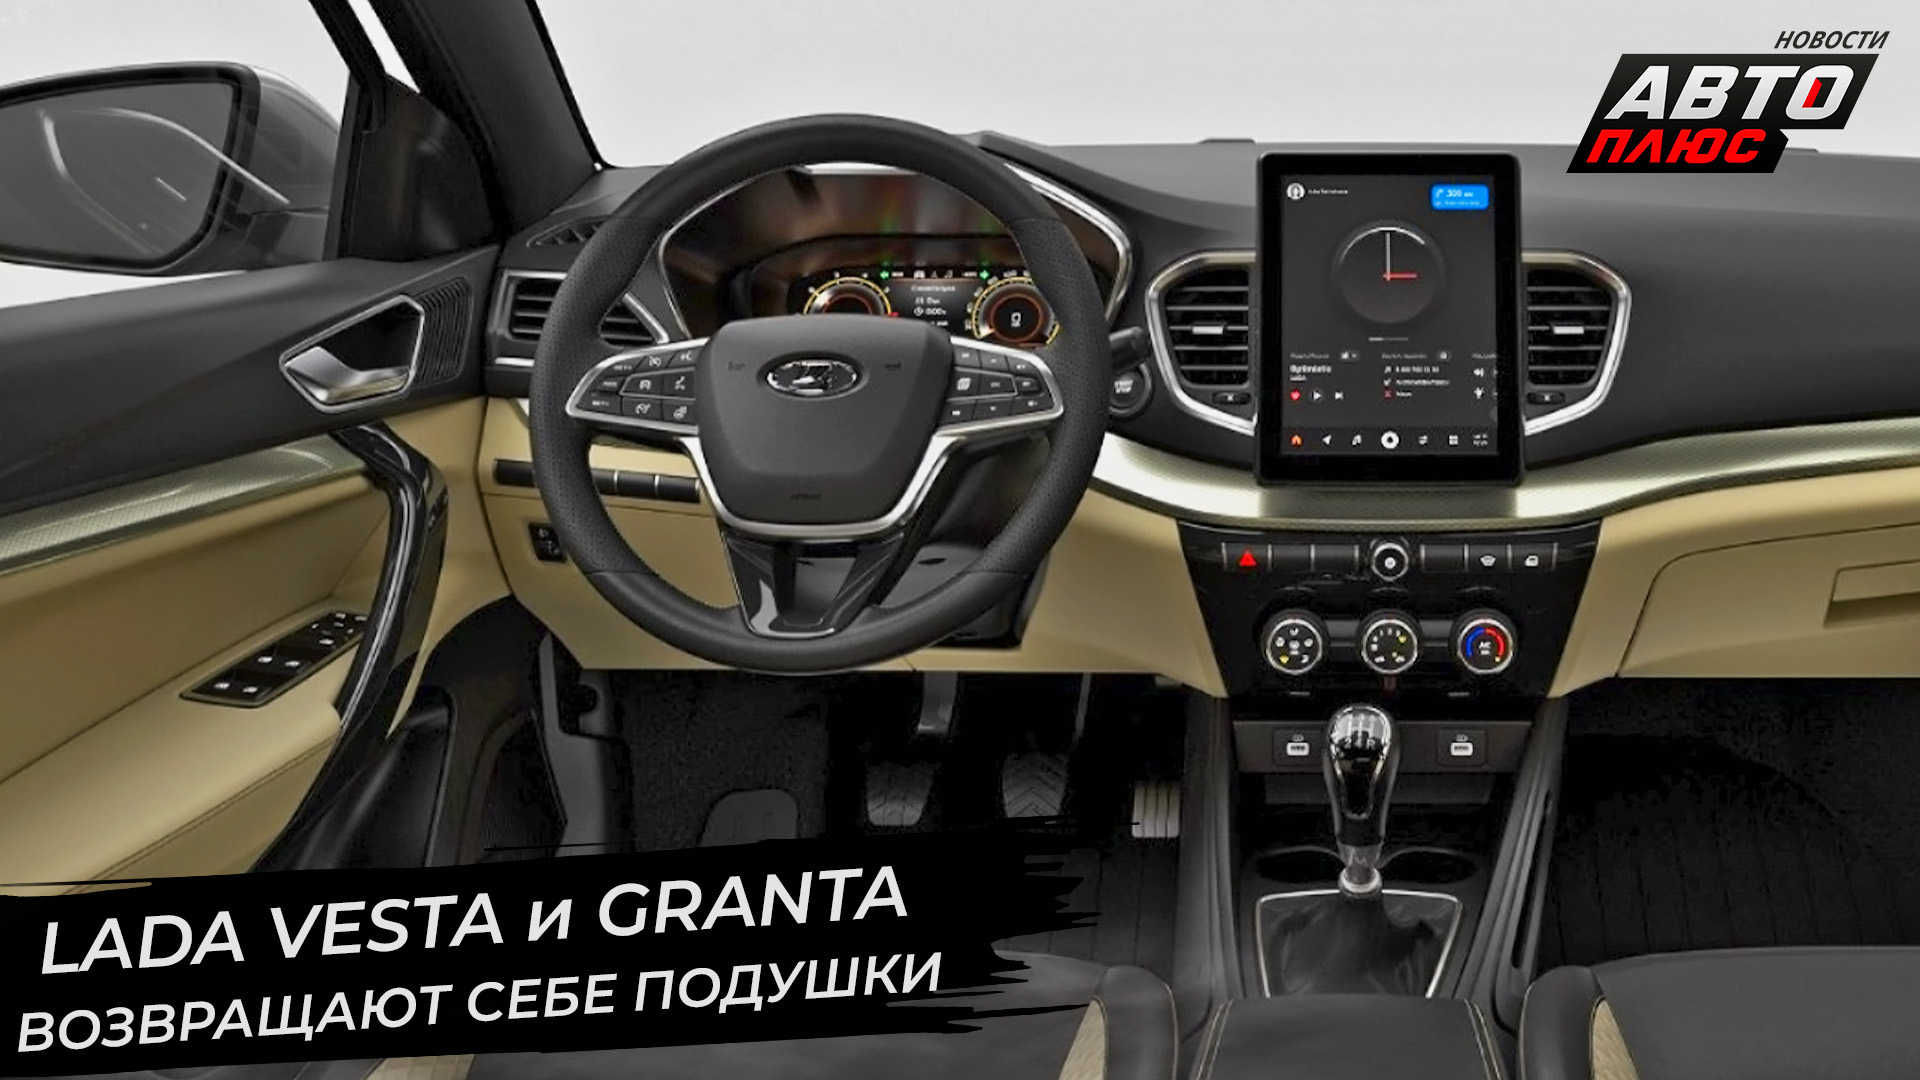 Lada Vesta вернула подушки, Granta улучшит интерьер, Niva станет безопаснее ? Новости с колёс №2825